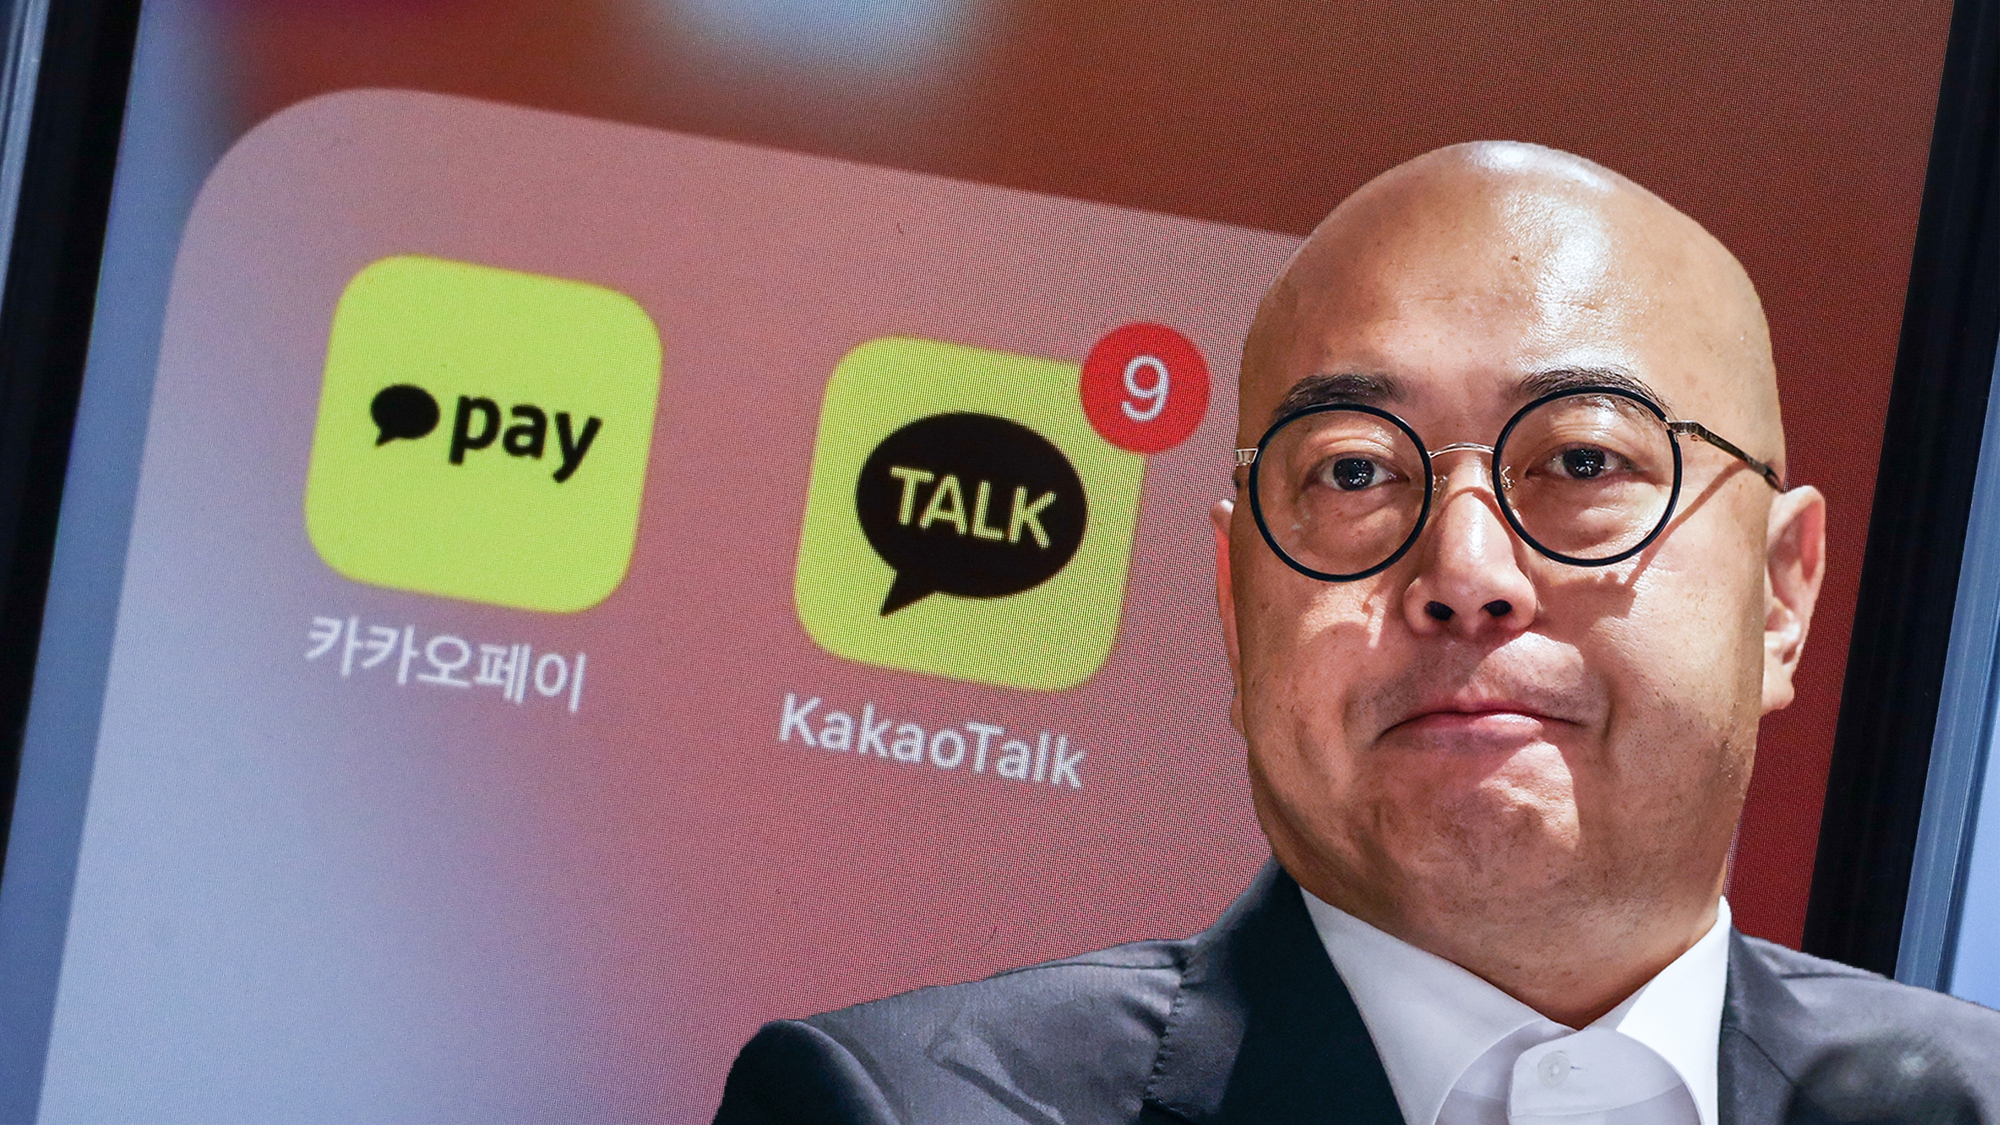 Đồng Giám đốc điều hành của Kakao Corp, Whon Namkoong, đã từ chức sau khi sự cố ngừng hoạt động trên diện rộng gây ra hỗn loạn tại một quốc gia phụ thuộc nhiều vào dịch vụ truyền thông xã hội và nhắn tin phổ biến nhất Hàn Quốc. Ảnh: @AFP.